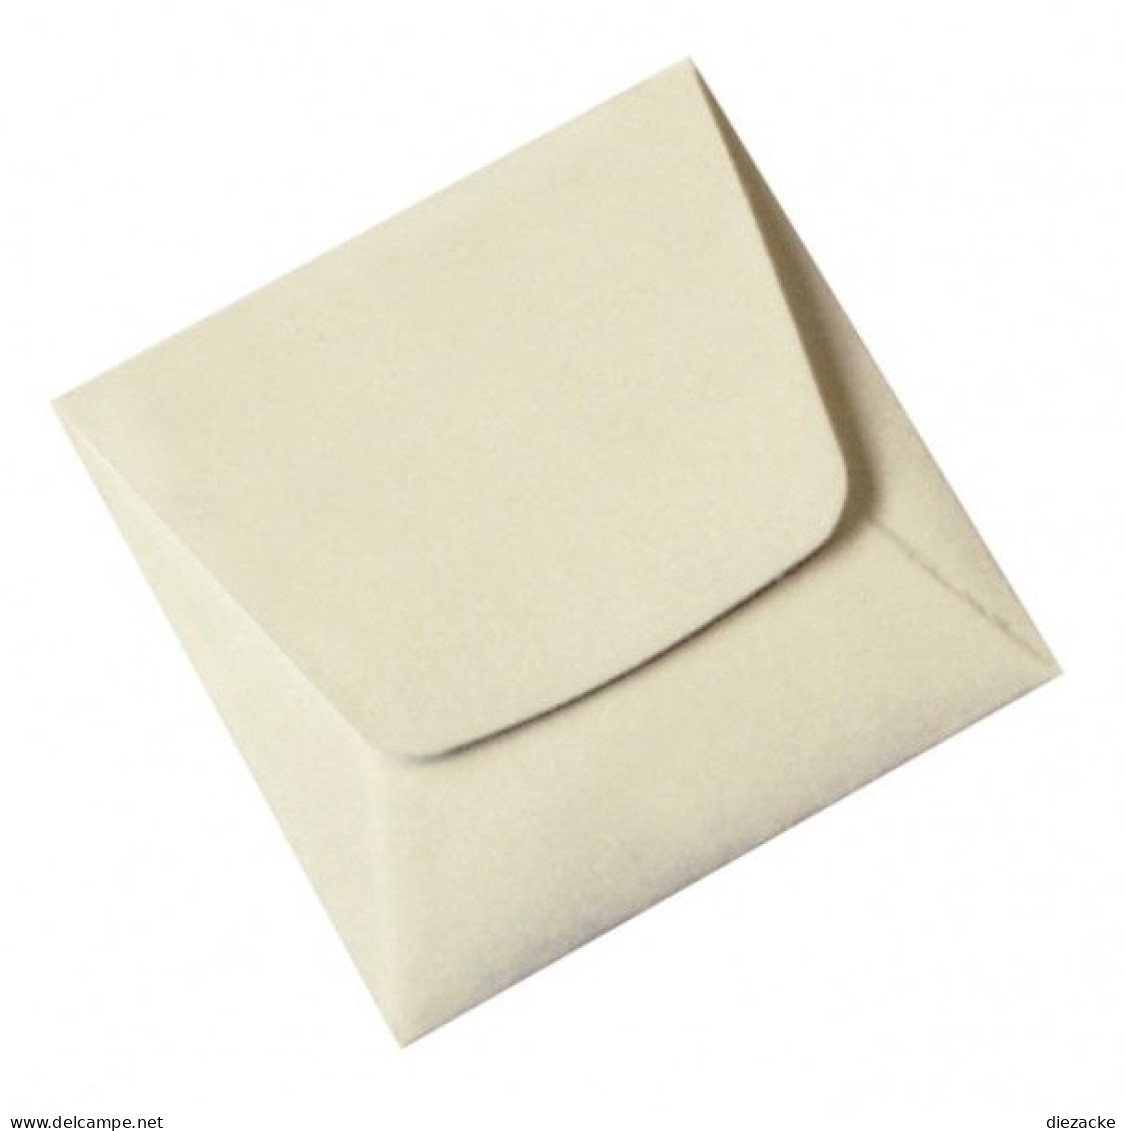 Lindner Münz-Taschen Aus Weißem Papier, 70 X 70 Mm, 8472 (1000er Packung) Neu - Supplies And Equipment